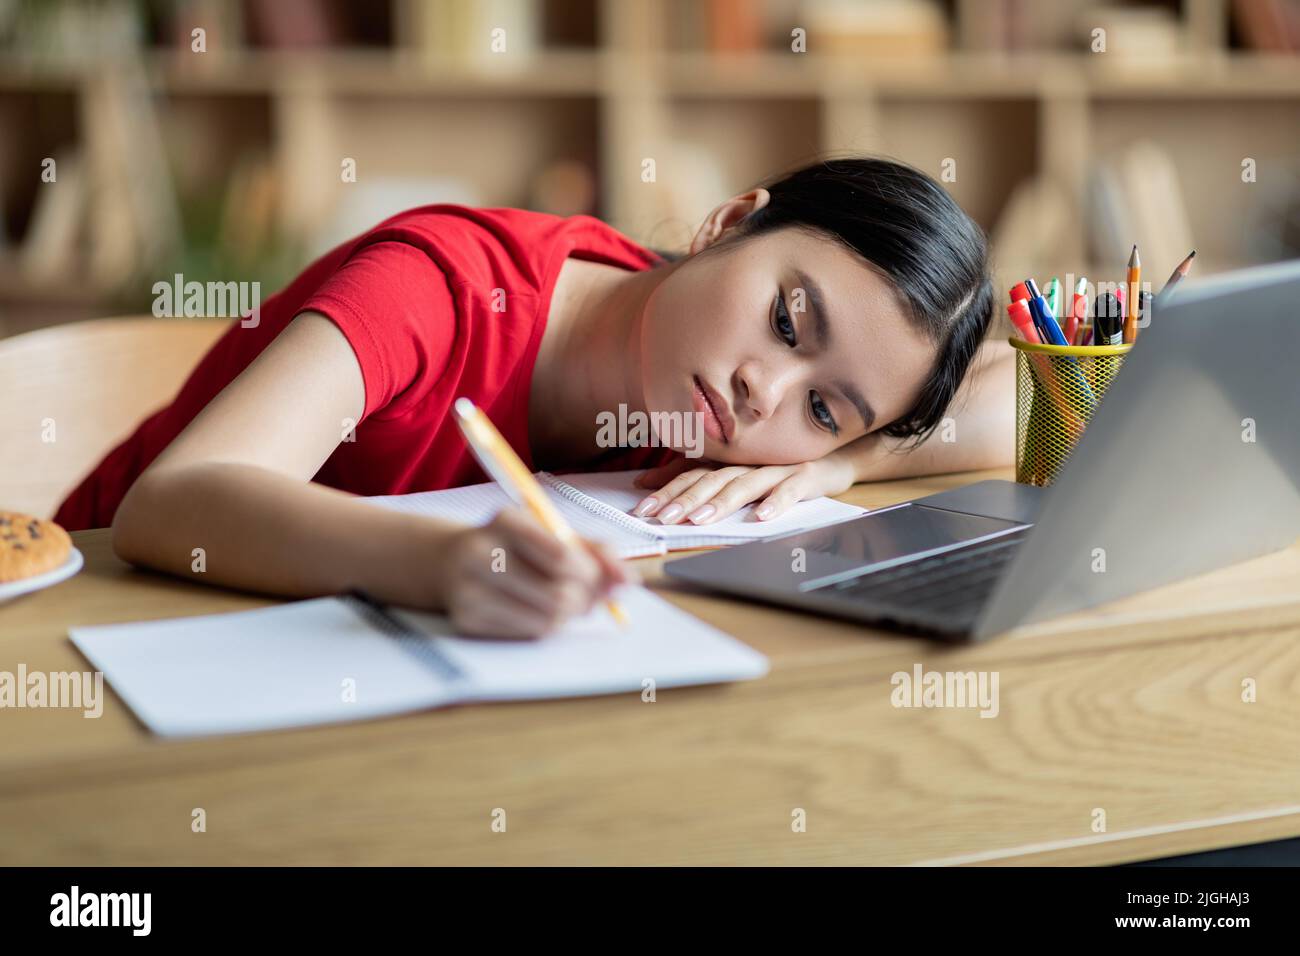 Müde Jugendliche japanische Studentin liegt auf dem Tisch in der Nähe des Computers im Innenraum des Zimmers Stockfoto